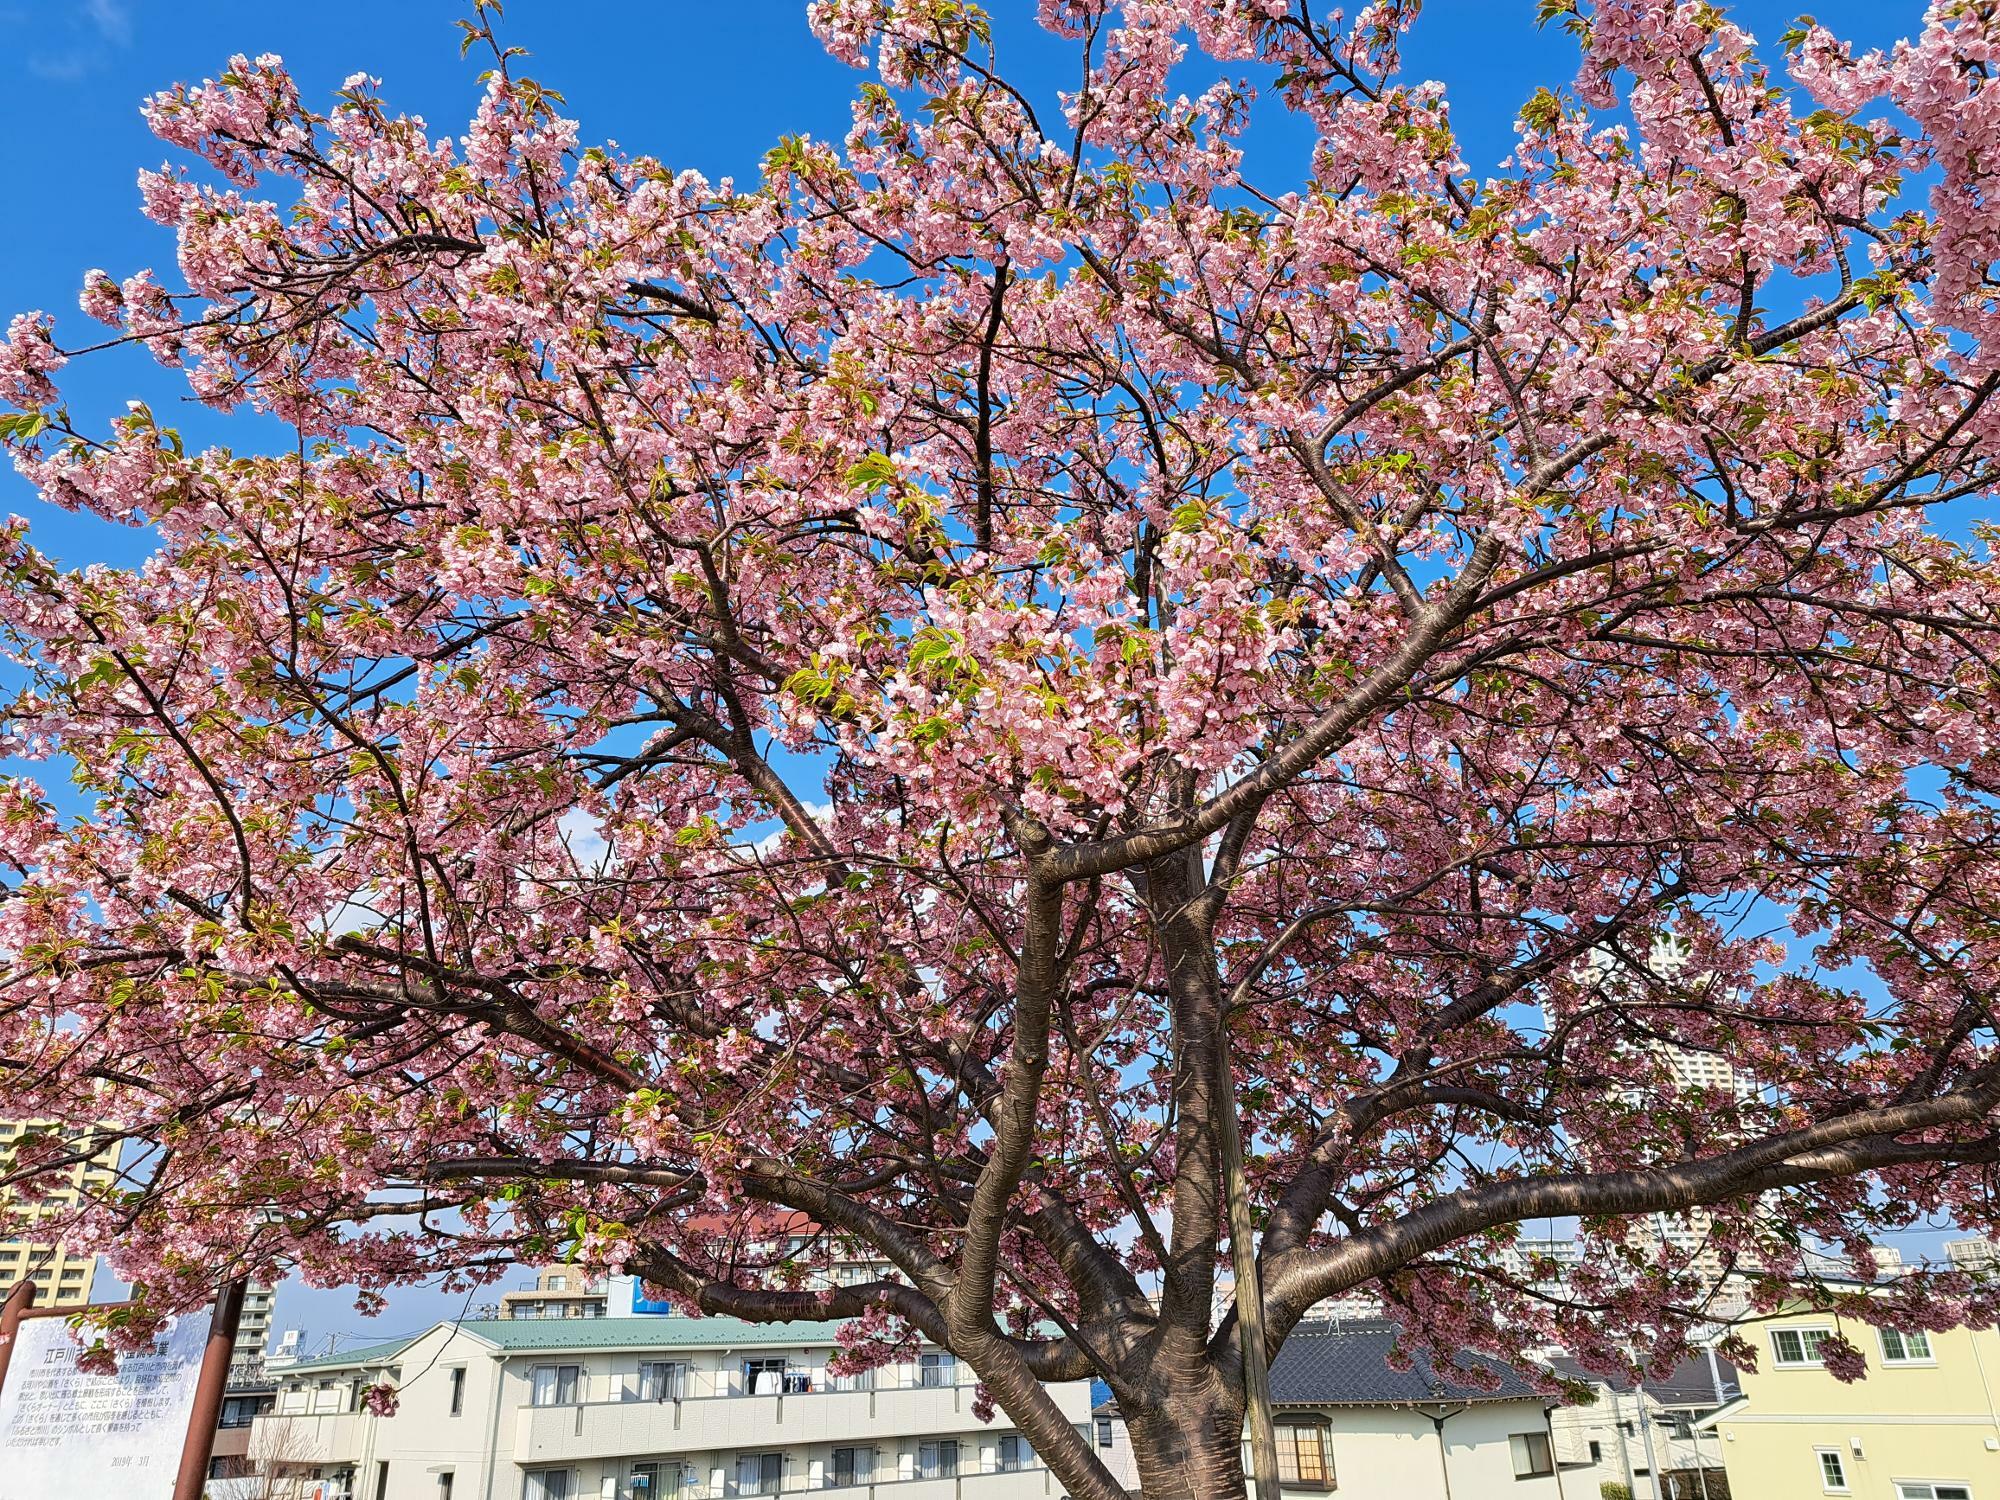 江戸川河川敷の桜並木はすでに葉桜も